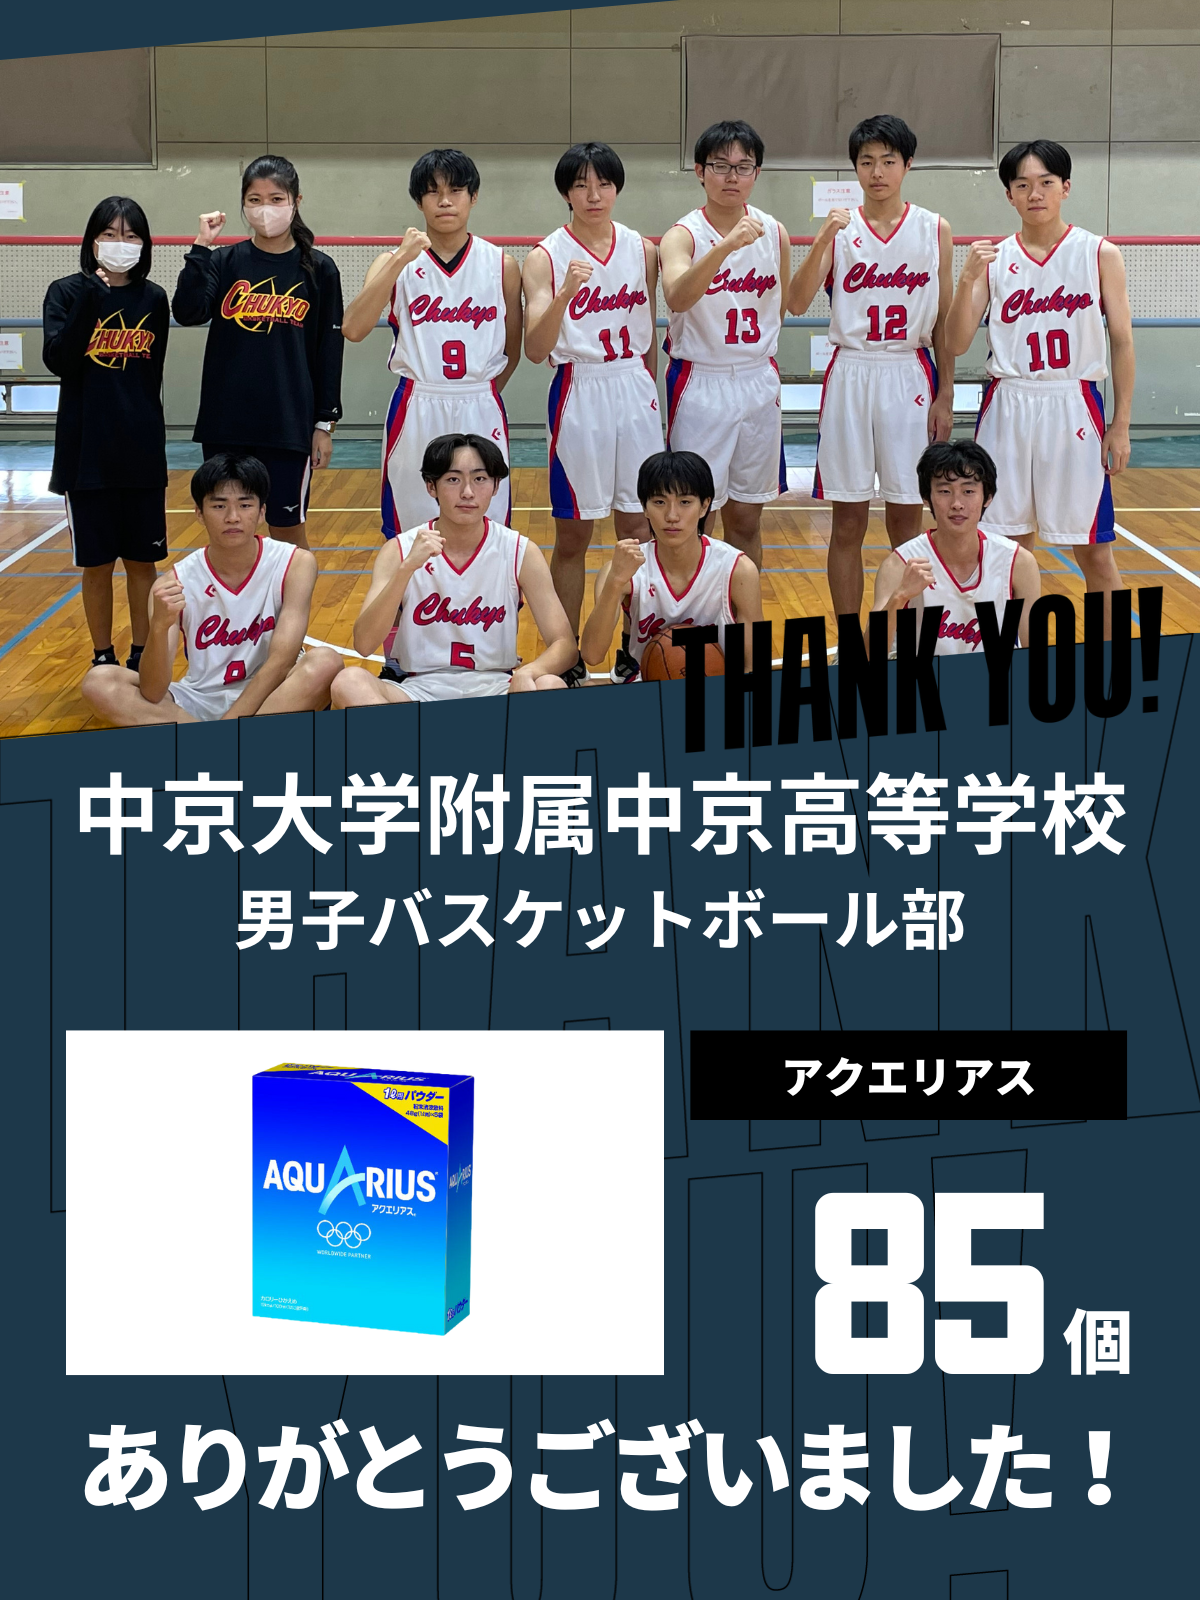 CHEER UP! for 中京大学附属中京高等学校　男子バスケットボール部